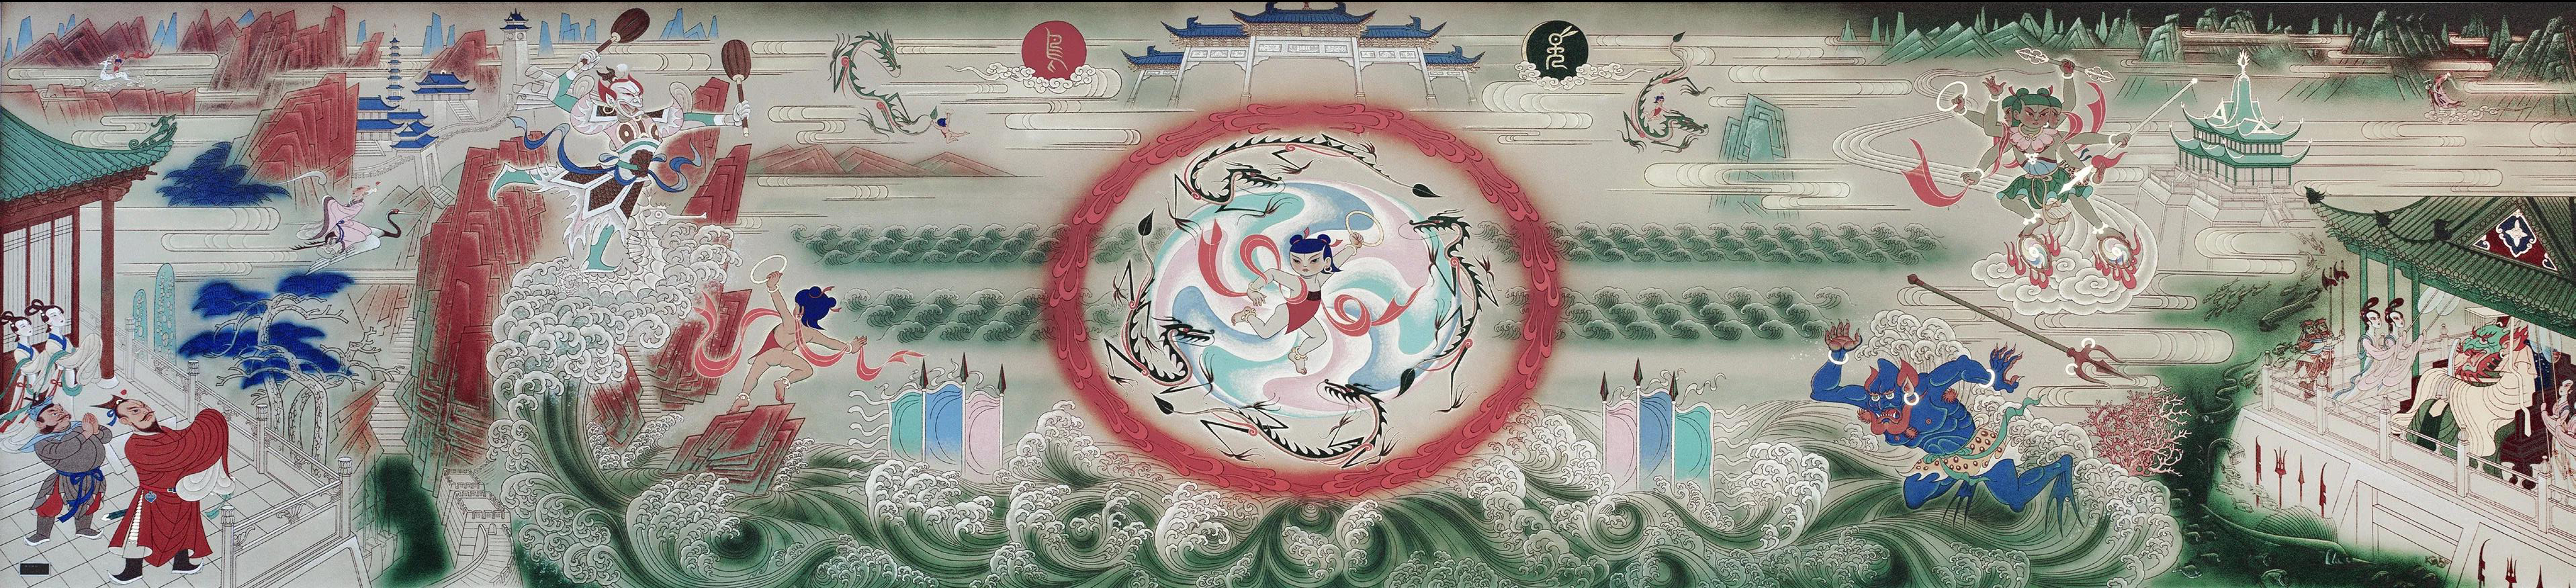 首都机场壁画研究专题守护20世纪的敦煌首都国际机场壁画在线纪念展